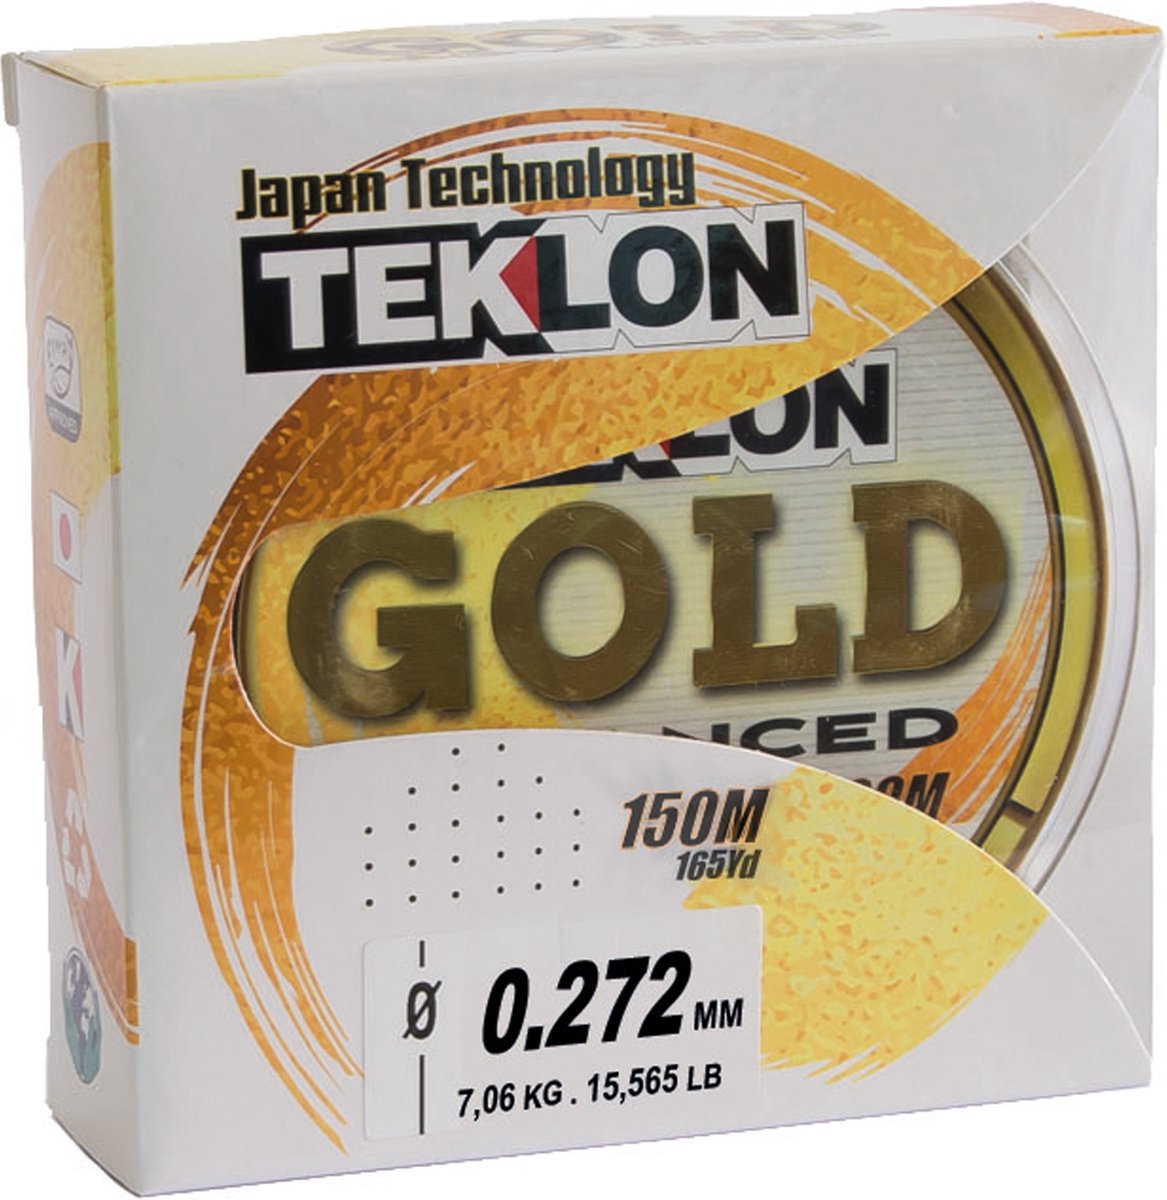 Teklon Gold Advanced - Vislijn - Nylon - 150 meter - Diameter 0.272mm - Trekkracht 7.06kg - Eftta Approved - teklon